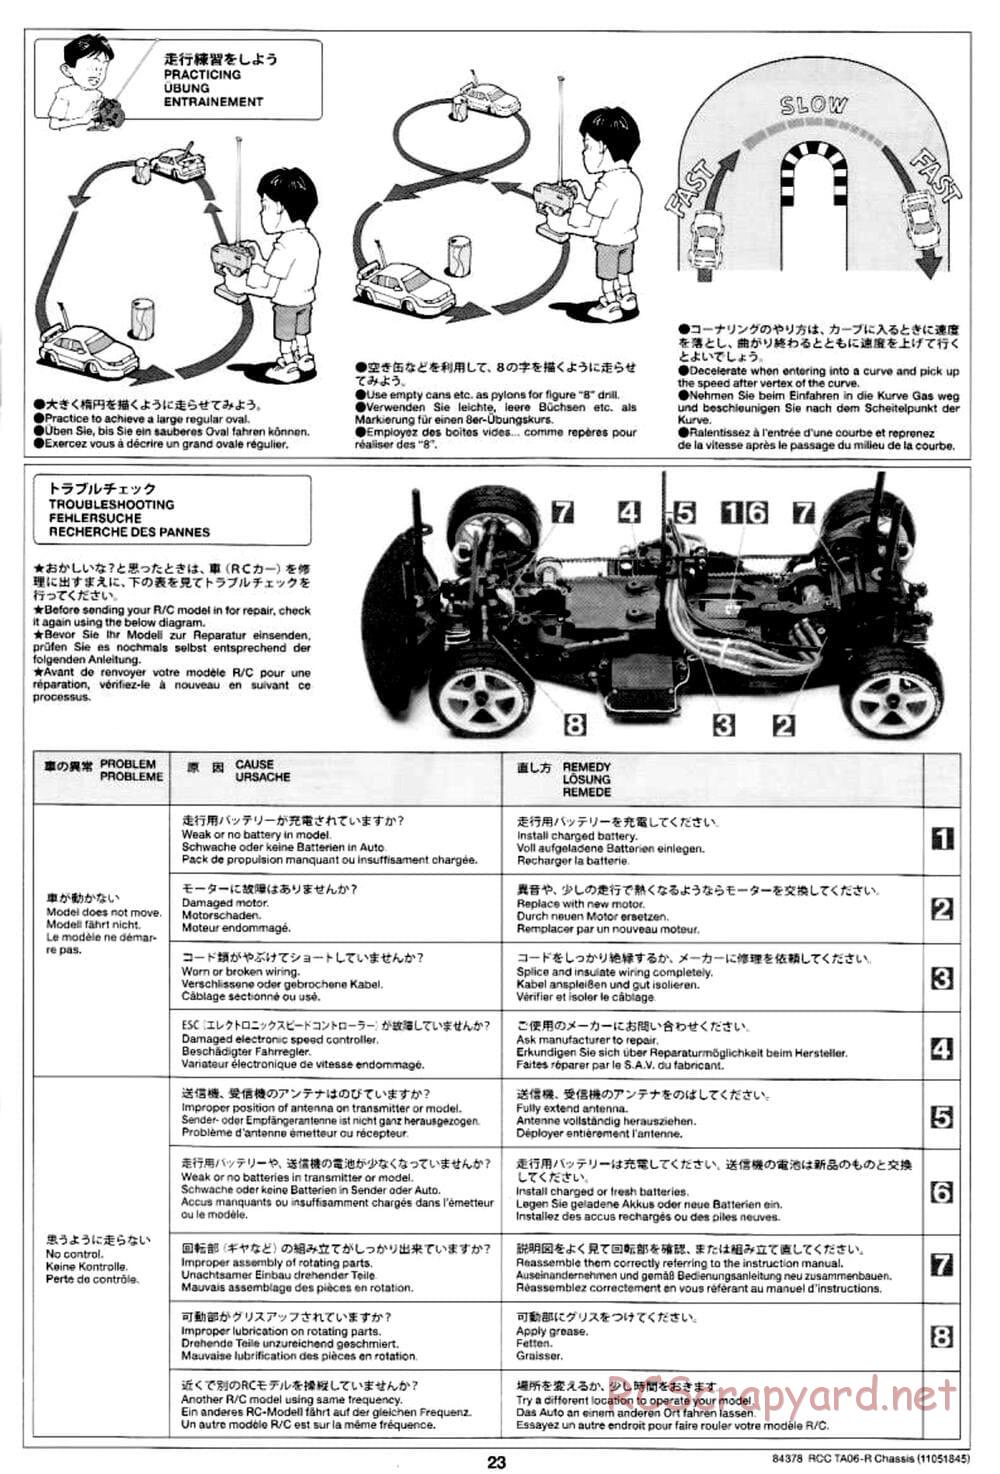 Tamiya - TA06-R Chassis - Manual - Page 23